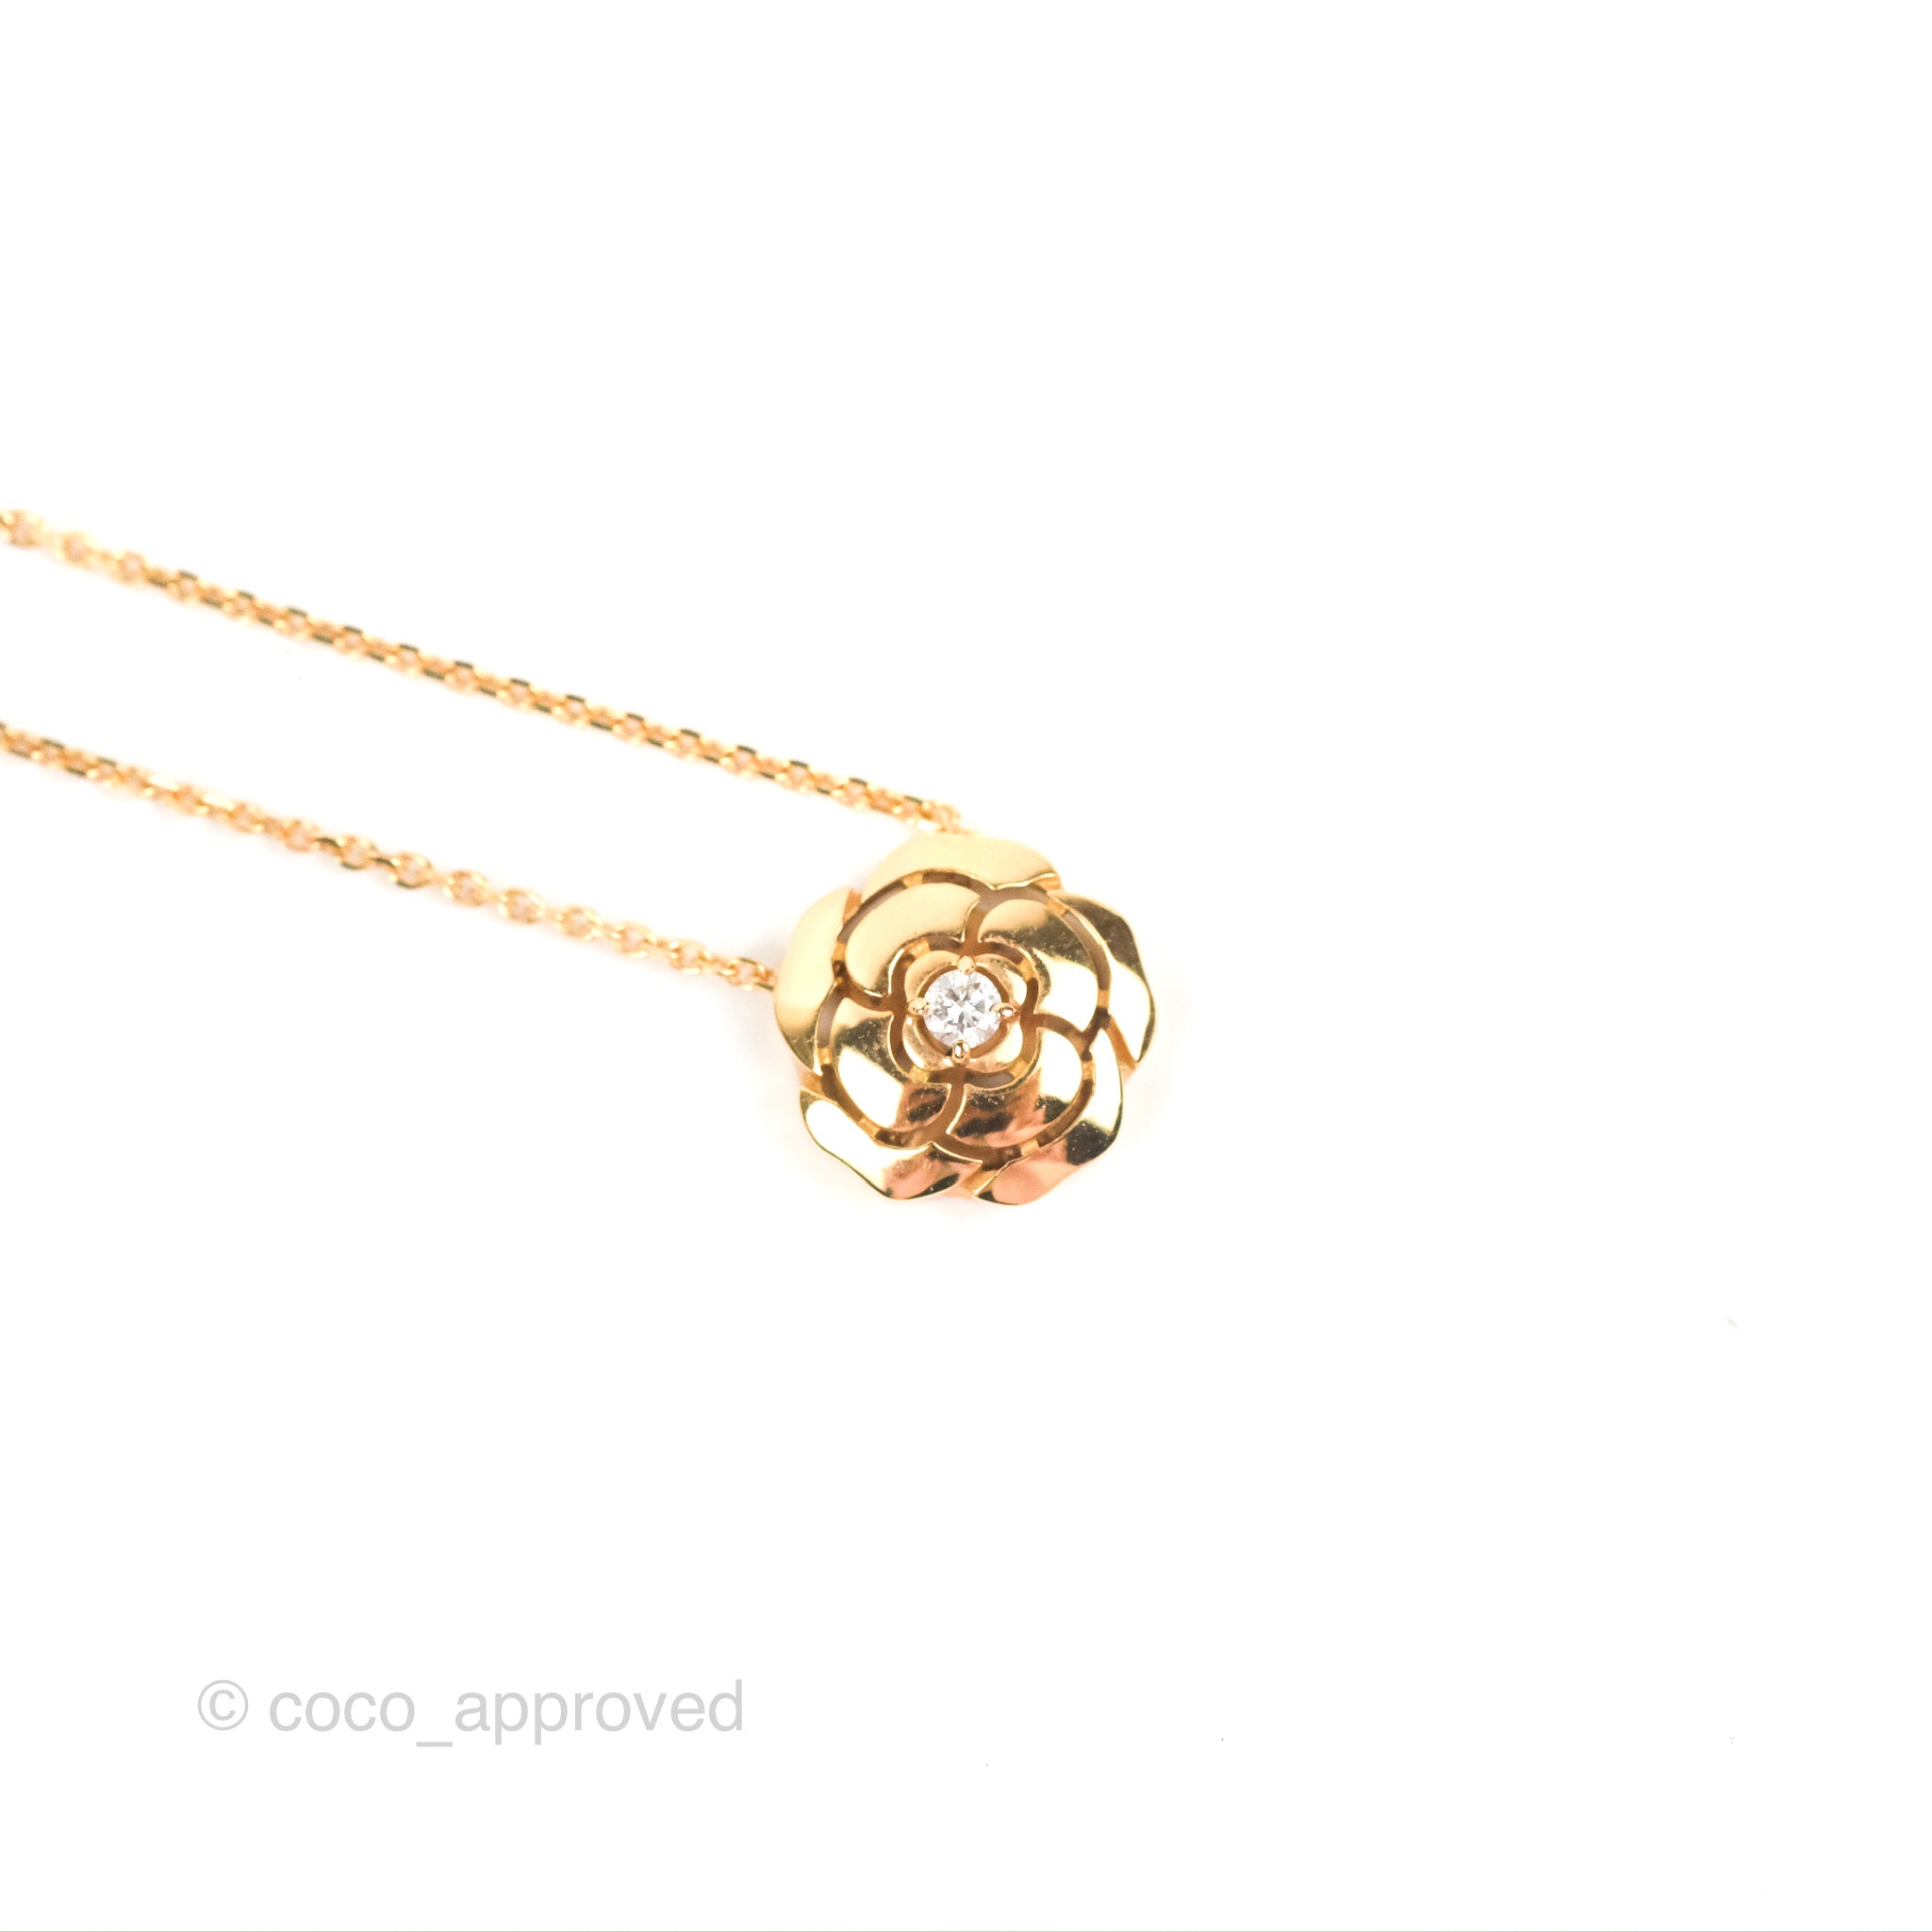 Chanel Extrait de Camélia J11660 Necklace 18k Pink Gold Diamonds